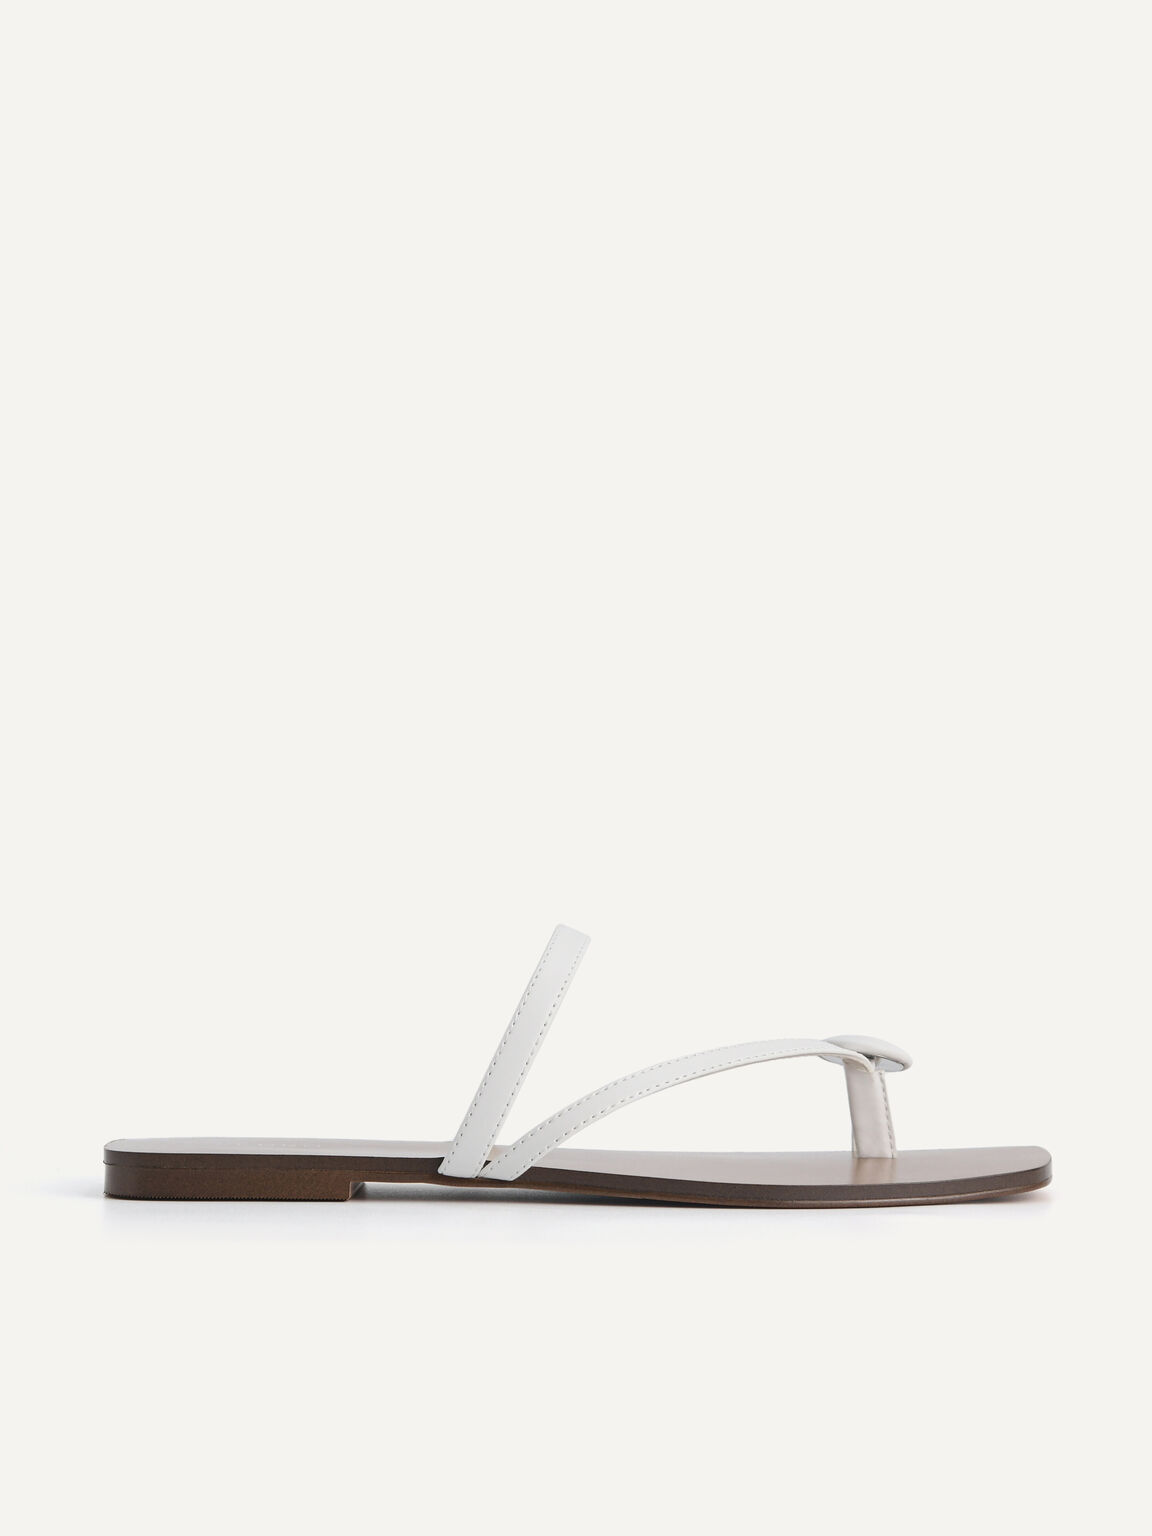 Toe Loop Sandals, White